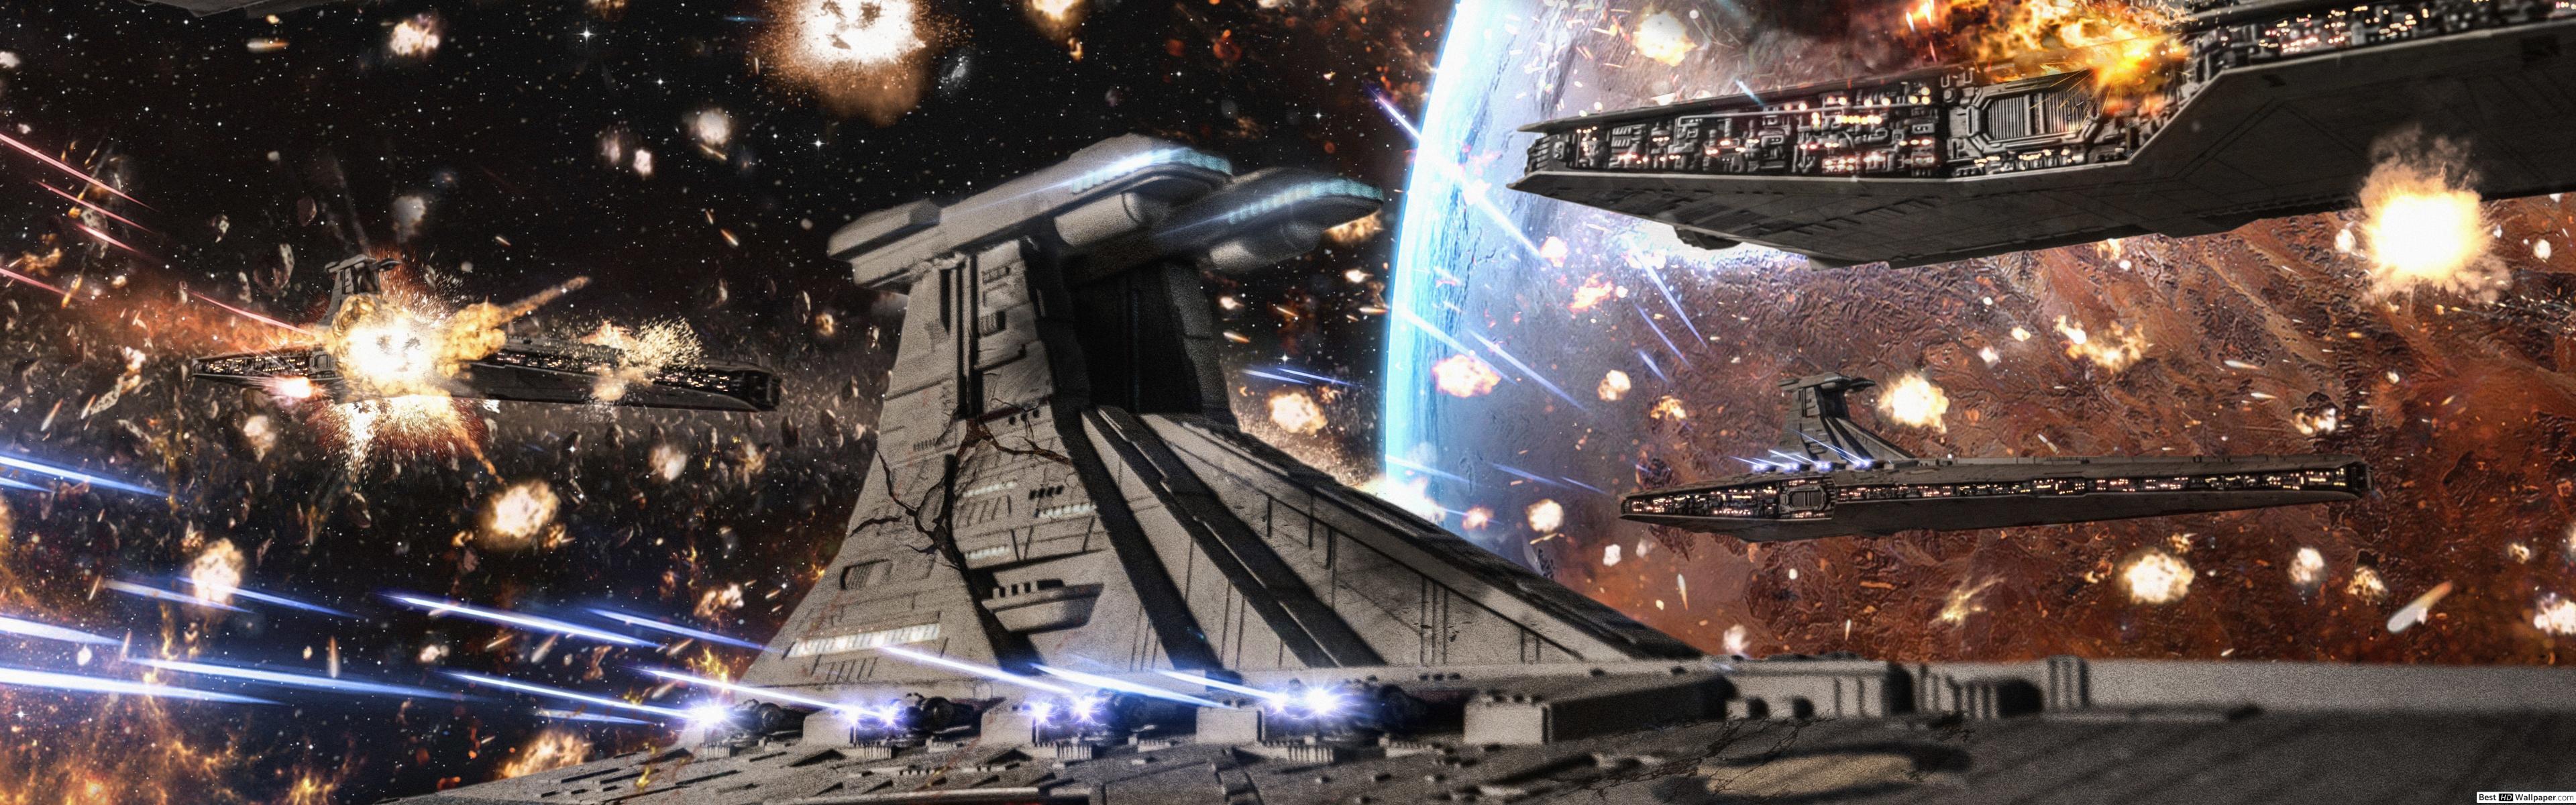 Star Wars Ship Wallpaper HD .teahub.io